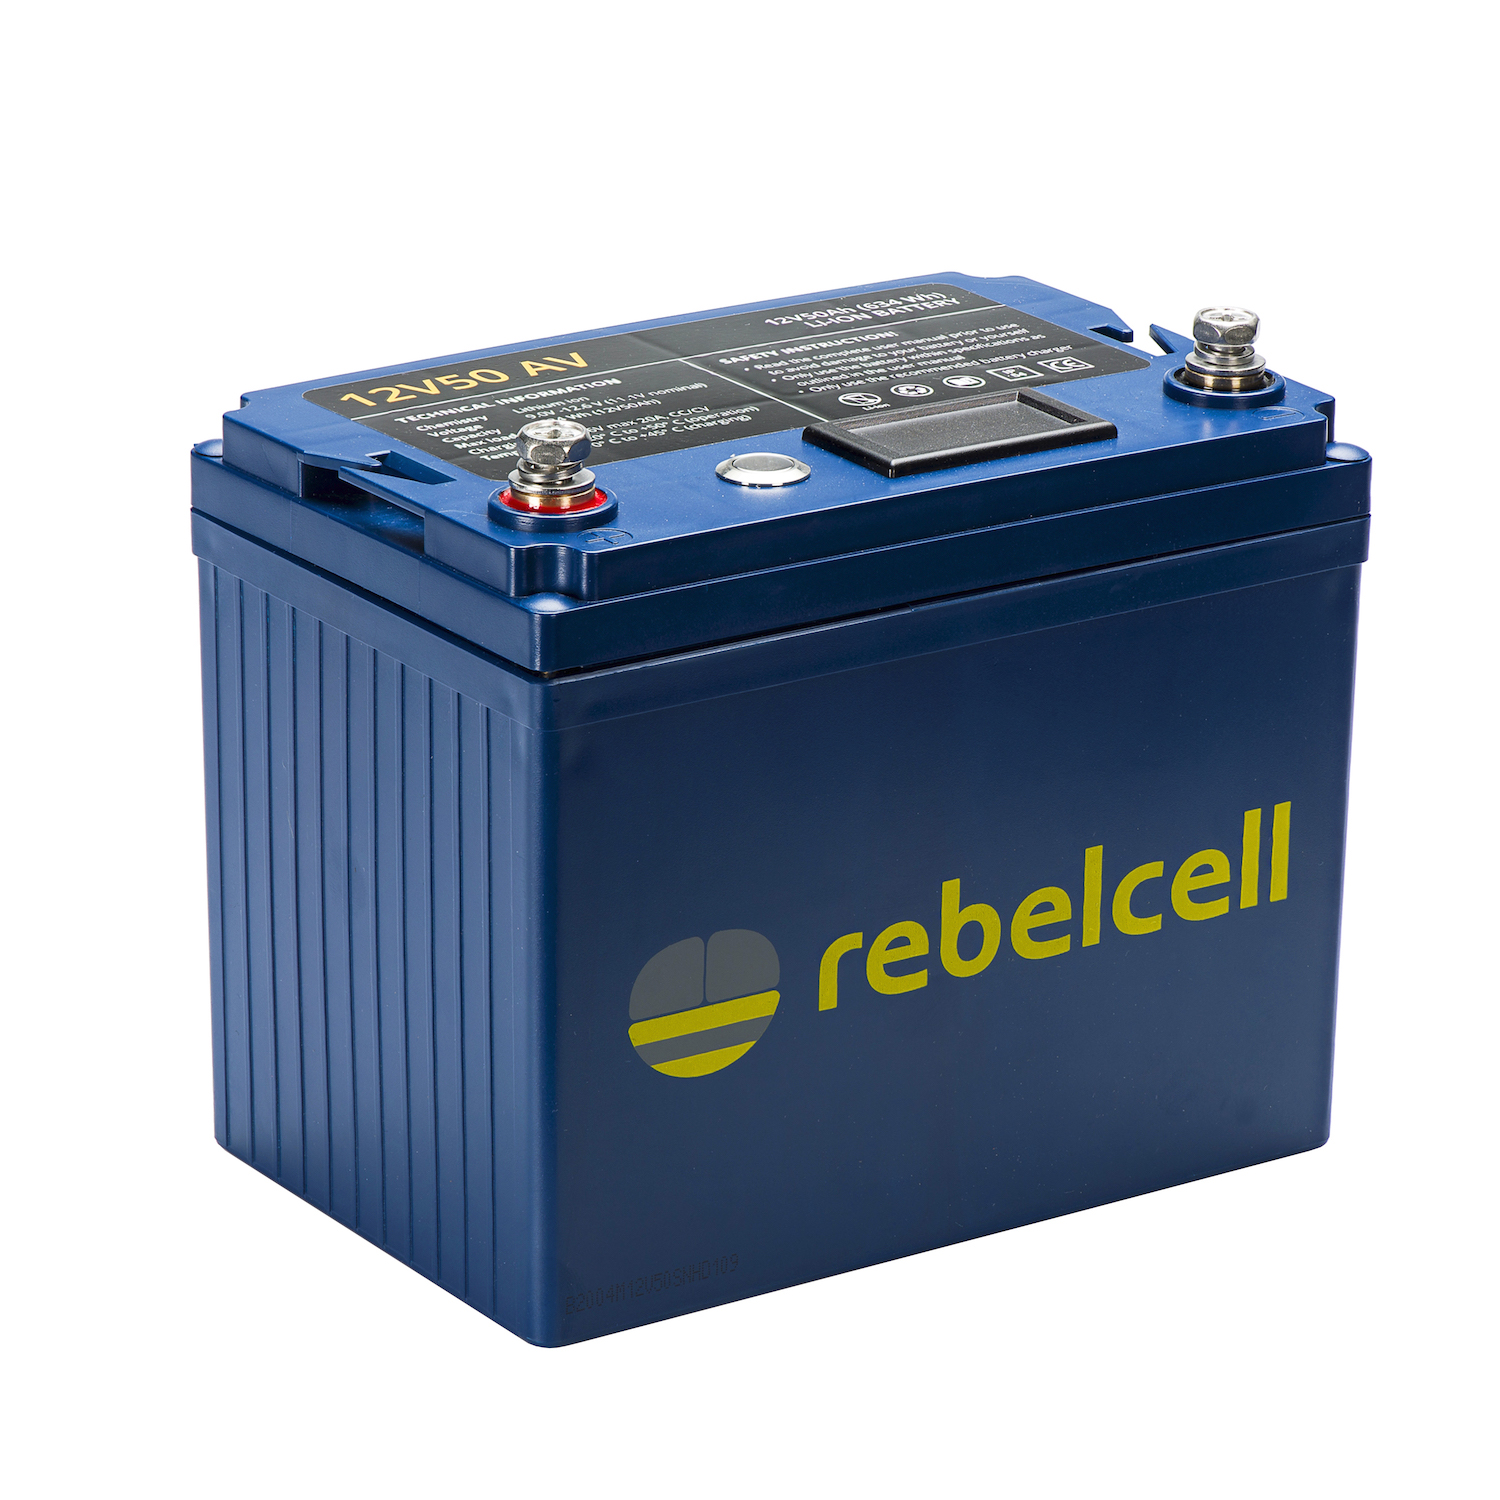 Populair Klik investering 12 volt 50Ah Lithium accu | Rebelcell | Portable energie voor buiten